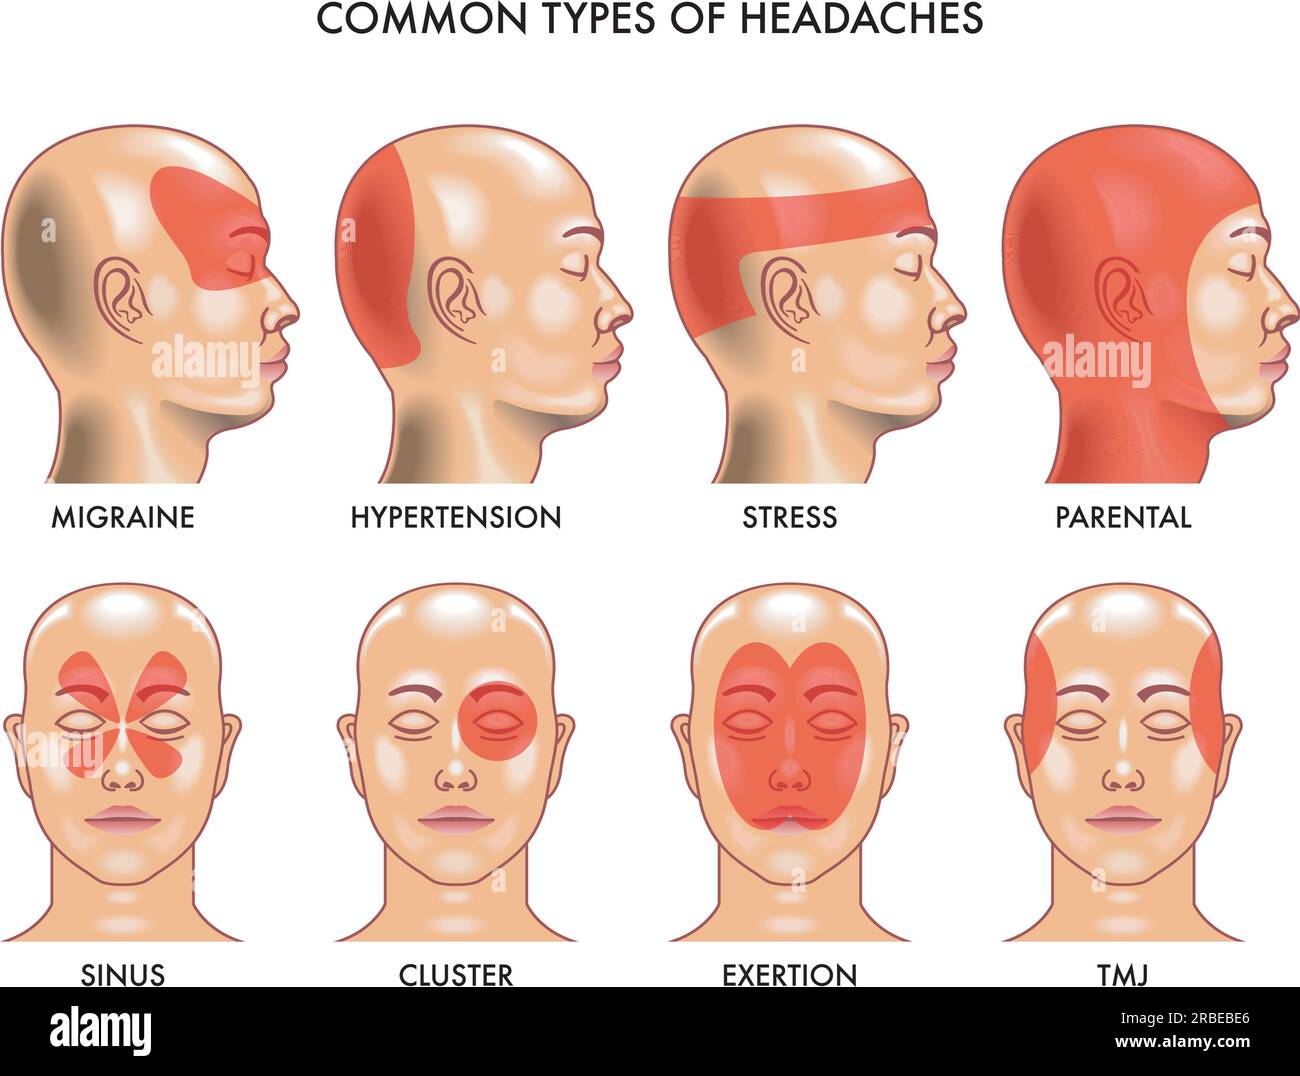 Illustrazione medica di tipi comuni di mal di testa. Illustrazione Vettoriale